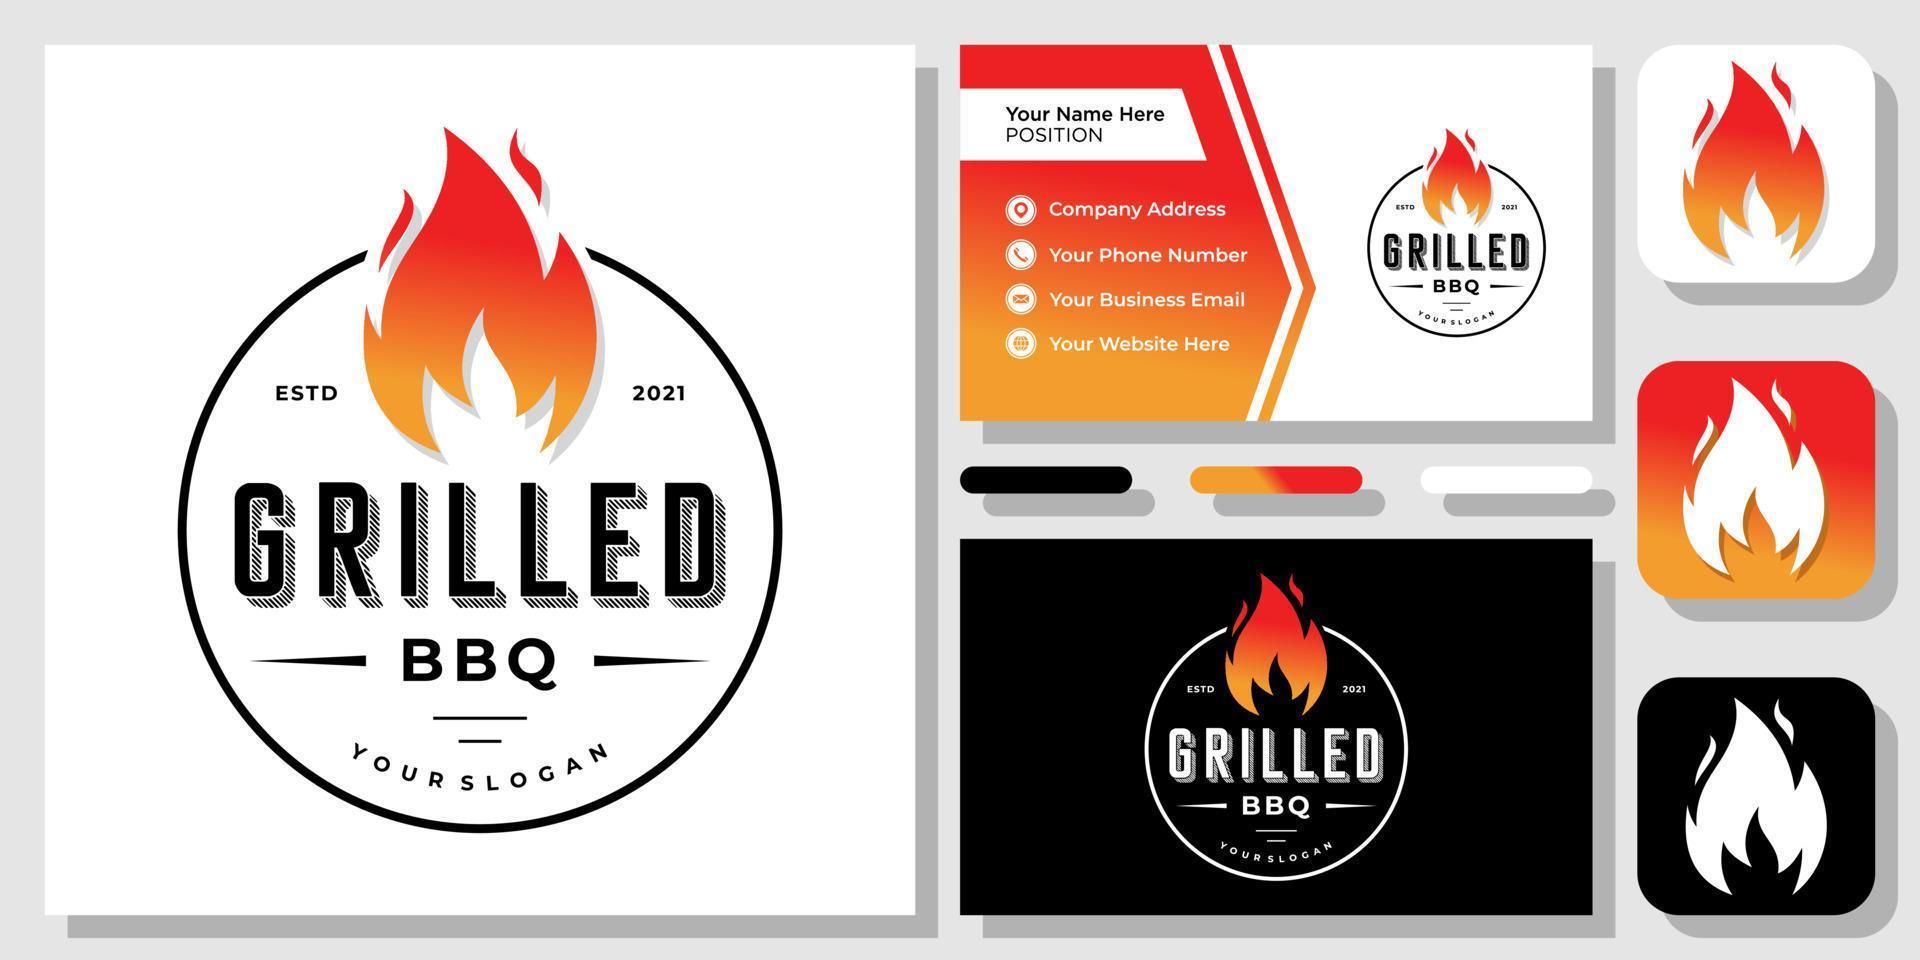 grill vuur heet branden barbecue koken biefstuk vlam vintage retro logo-ontwerp met sjabloon voor visitekaartjes vector